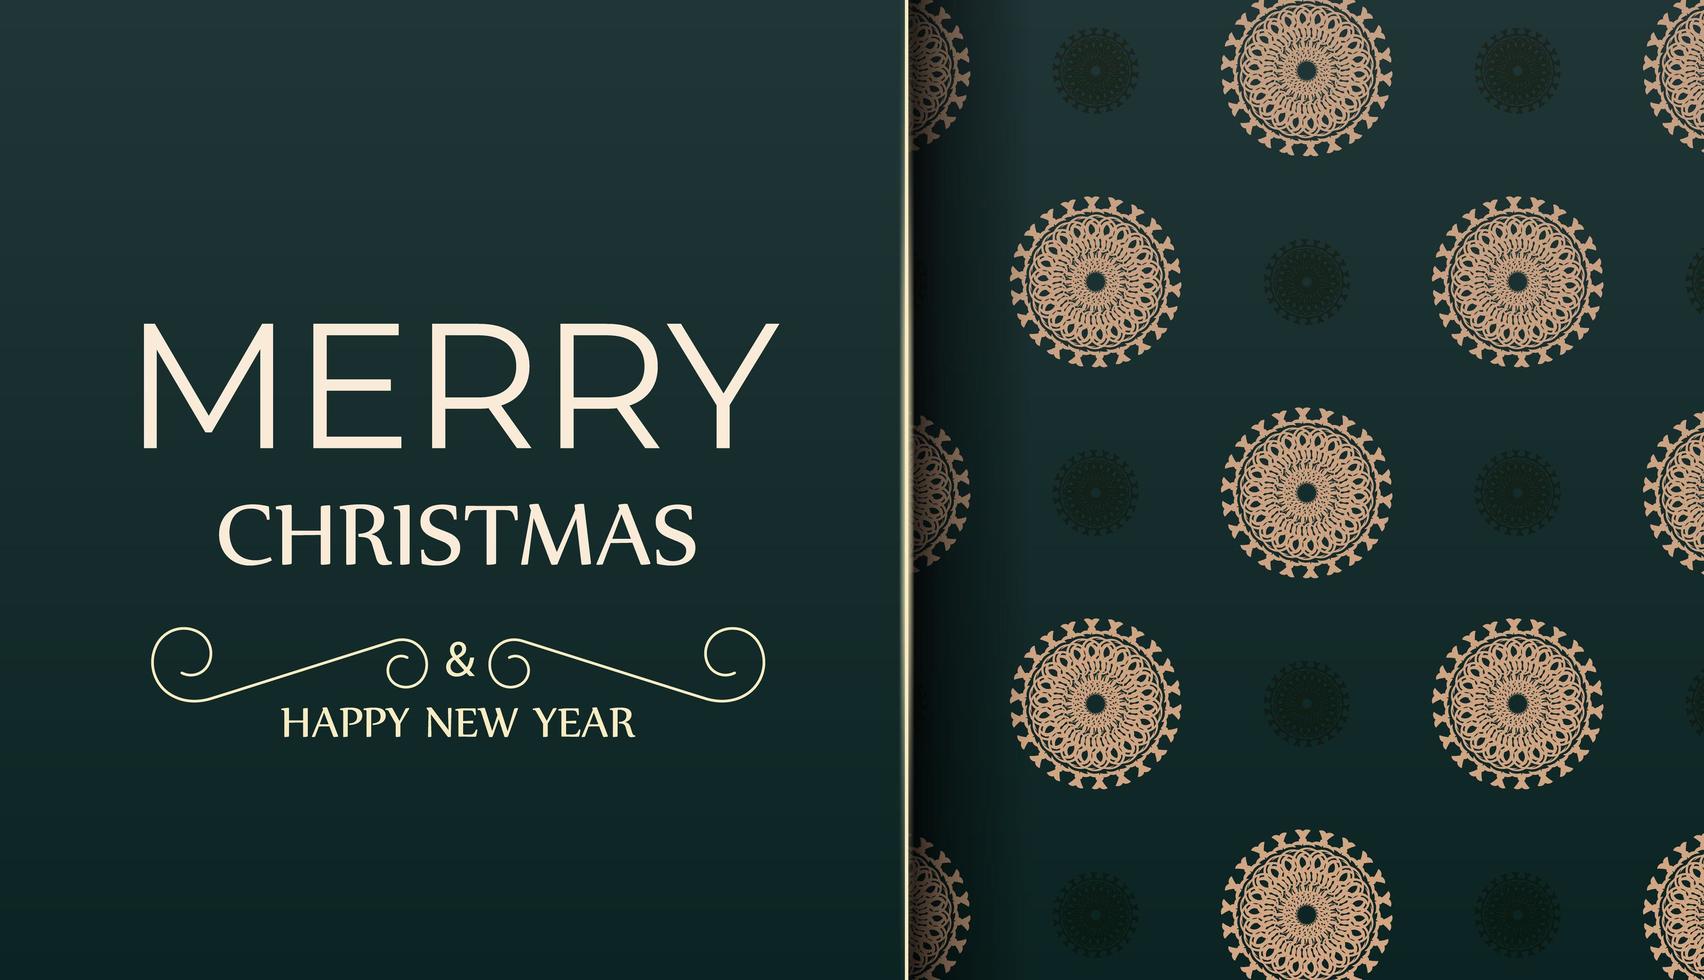 god jul och gott nytt år hälsning reklambladsmall i mörkgrön färg med vintage gult mönster vektor